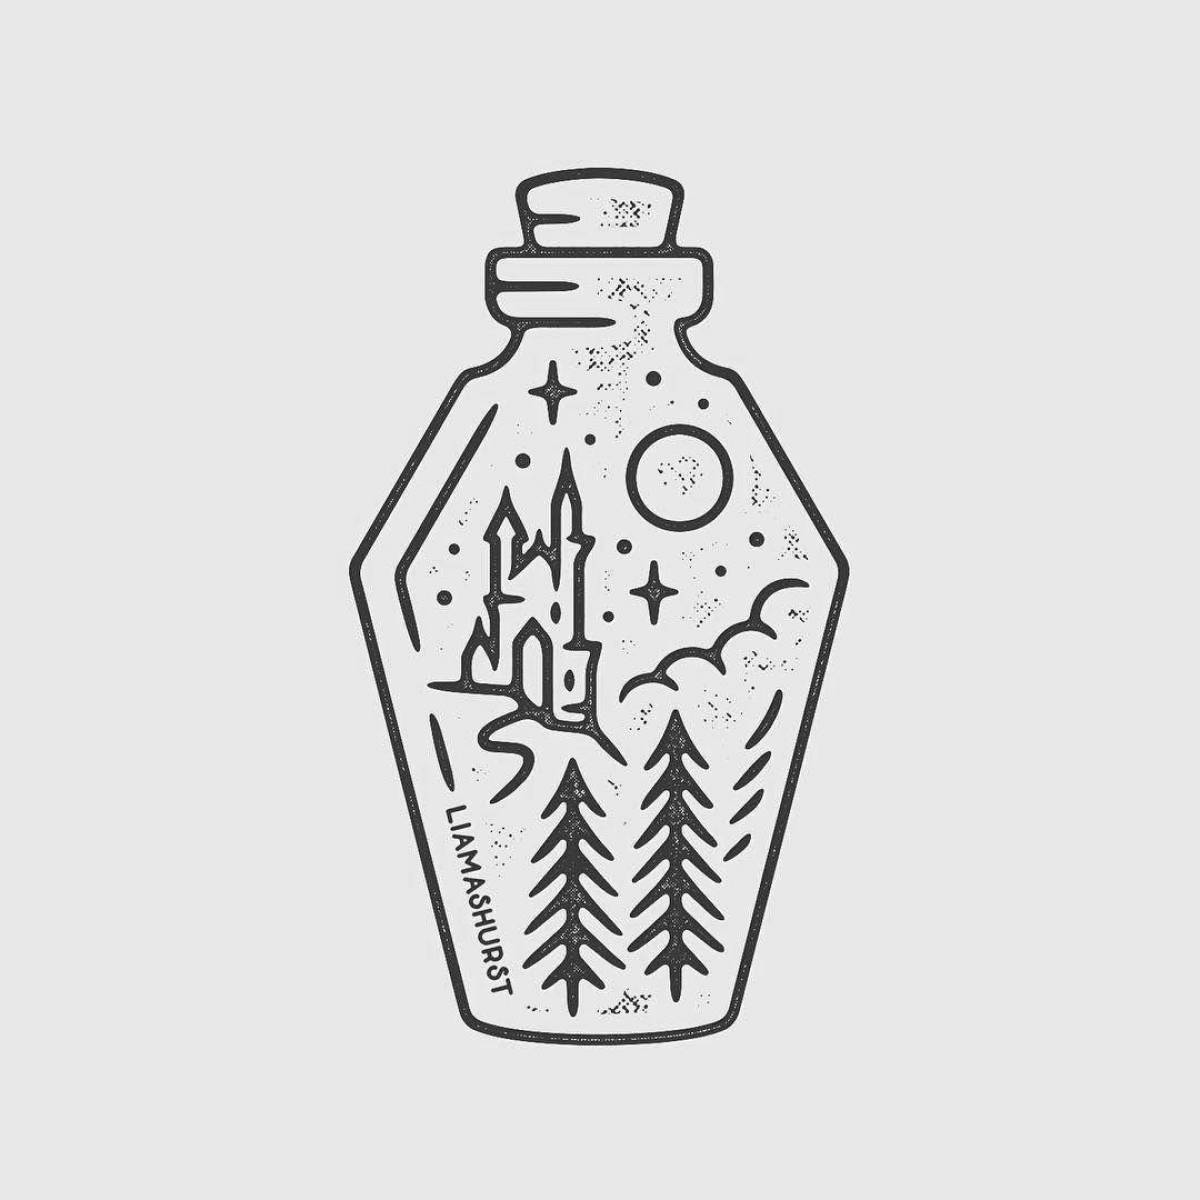 Potion in a bottle #5